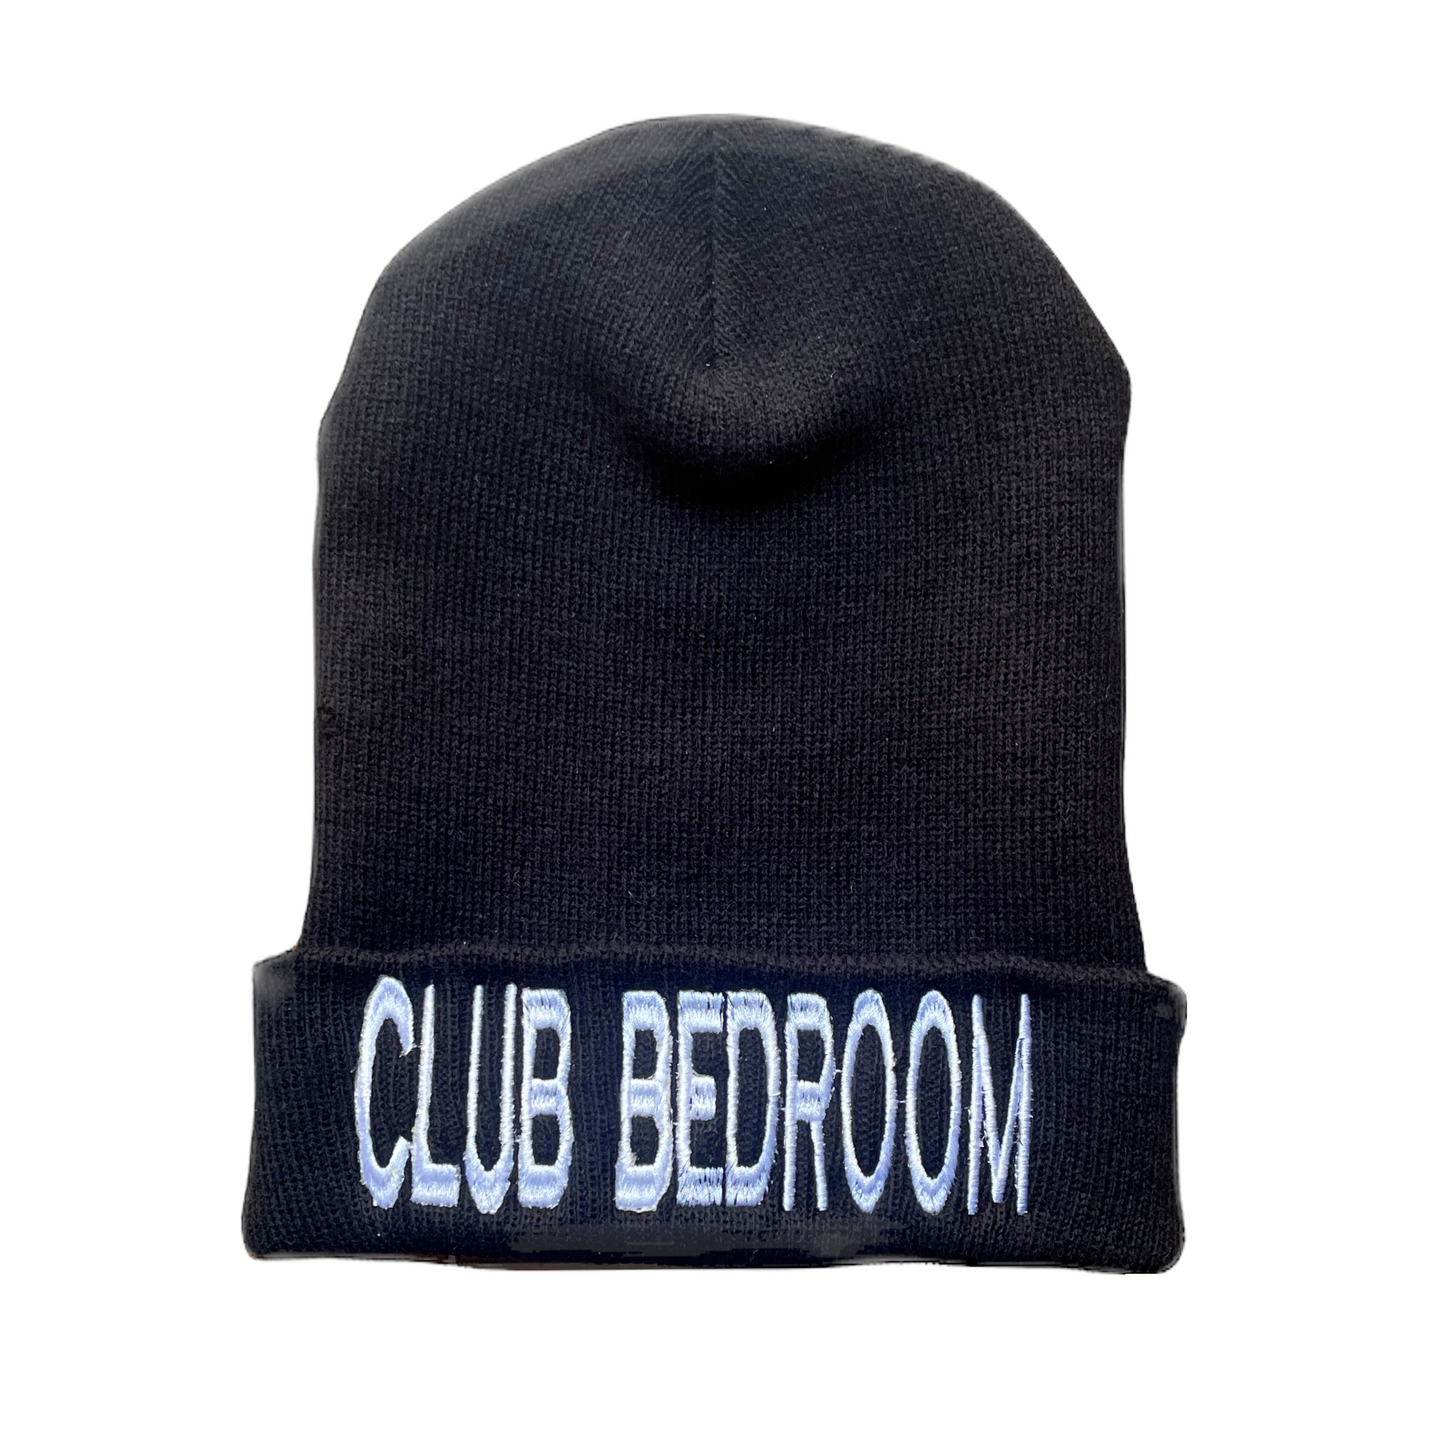 Club Bedroom Beanies